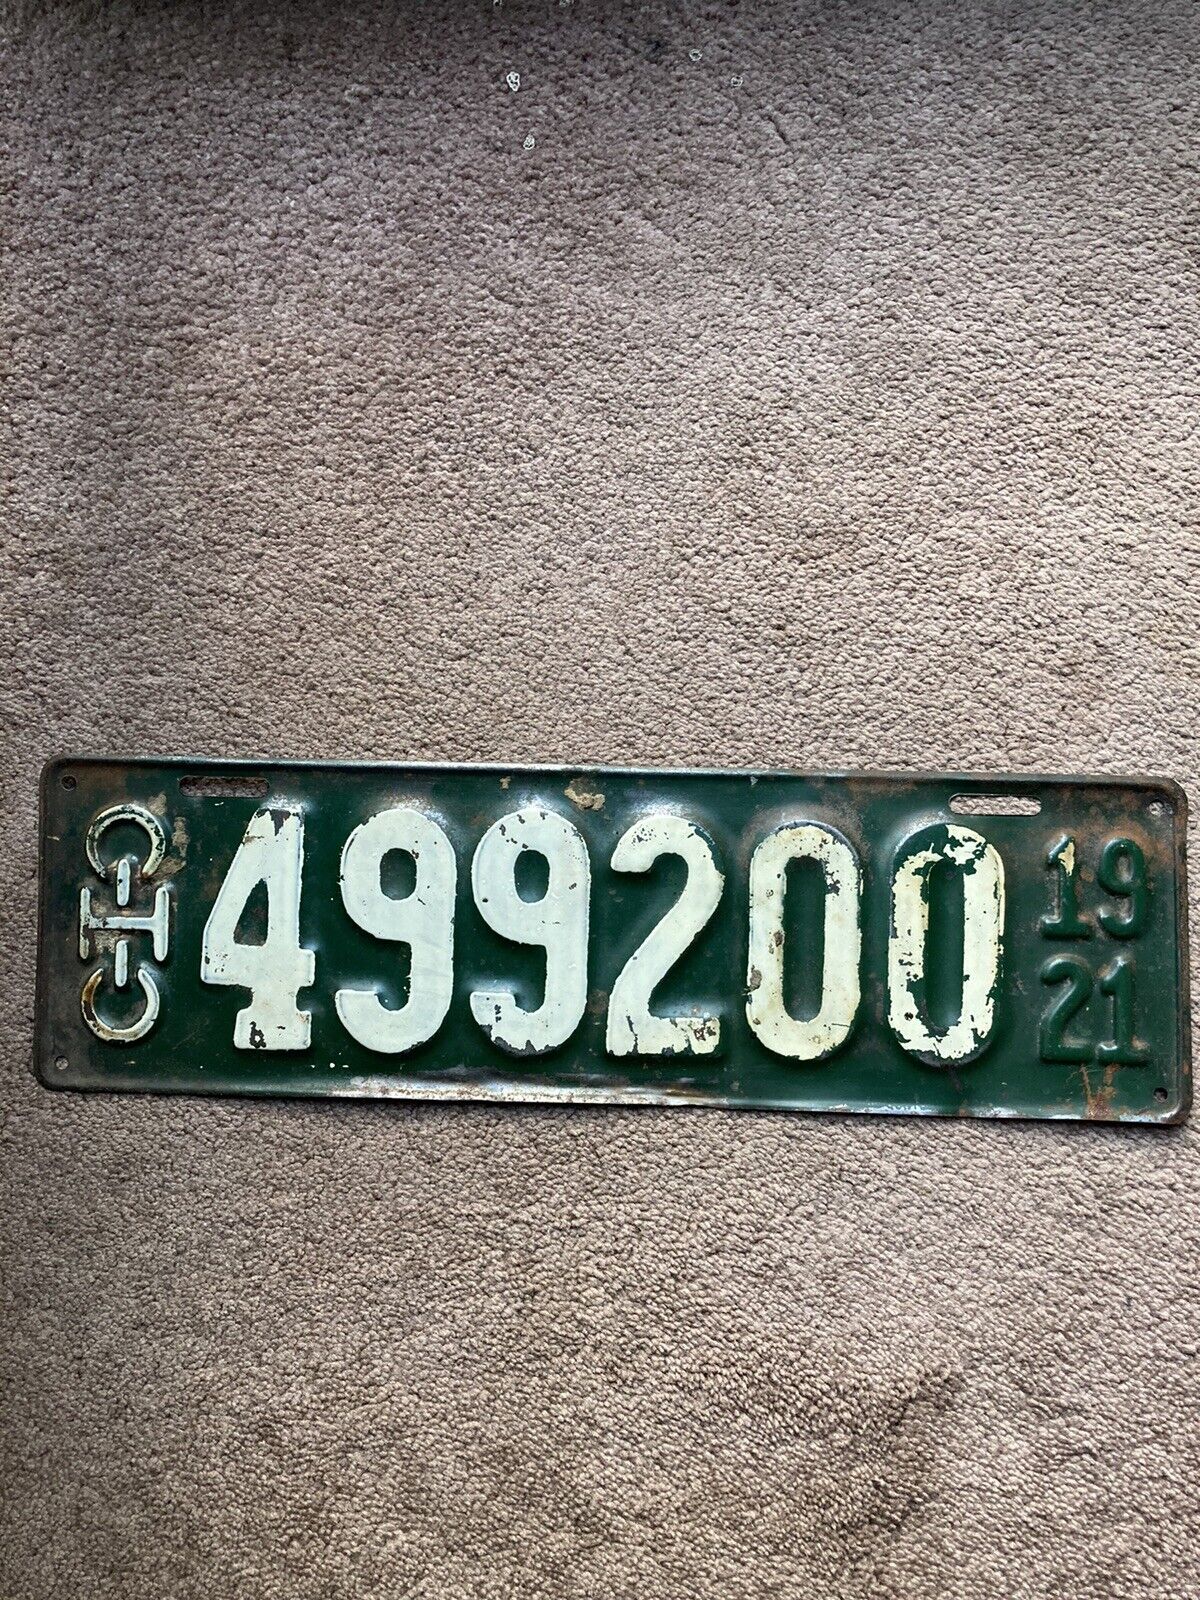 1921 Ohio License Plate - 499200 - Nice Oldie